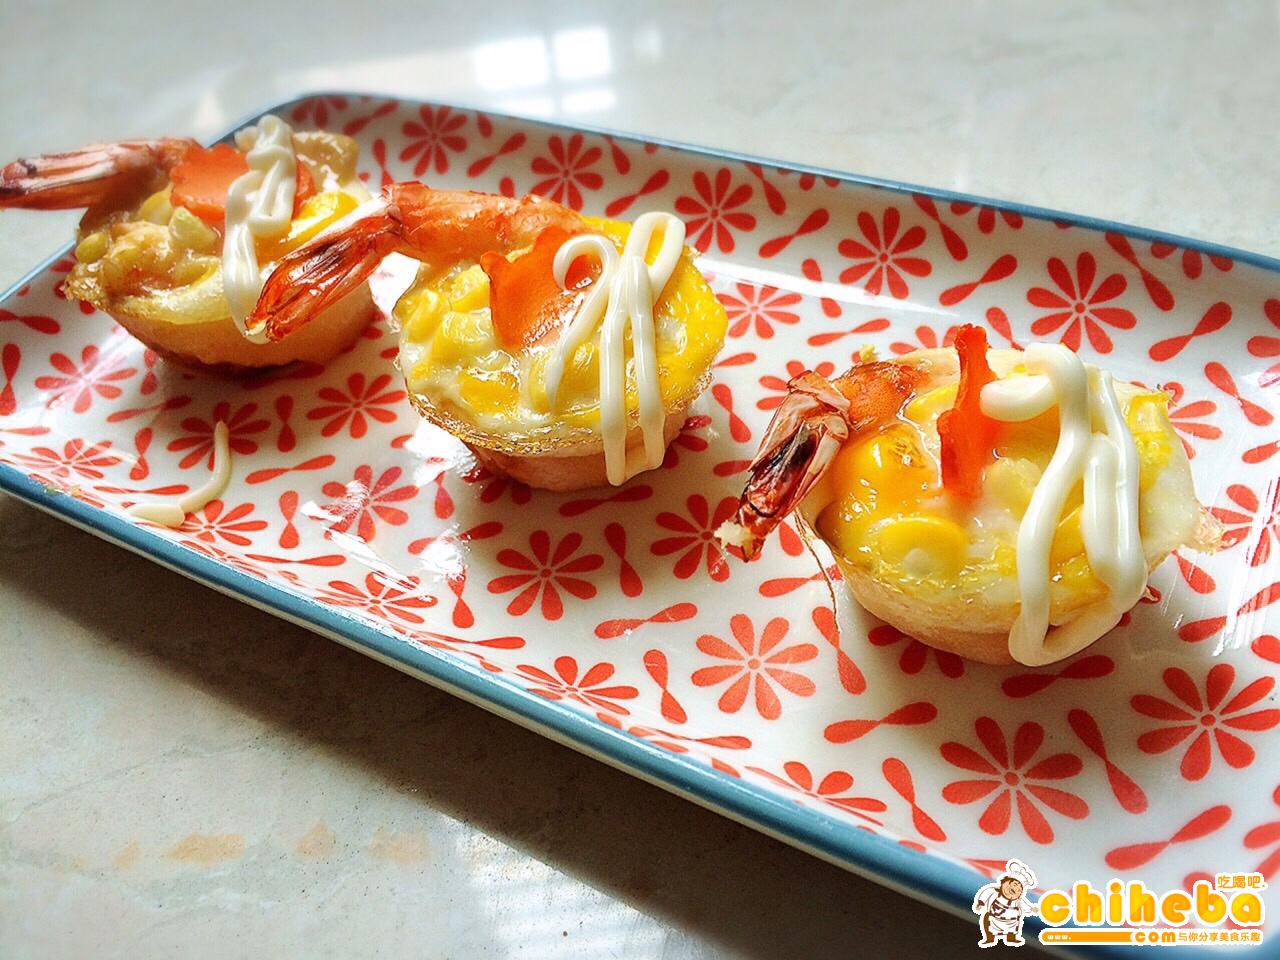 虾扯蛋—烤箱版台湾著名小吃